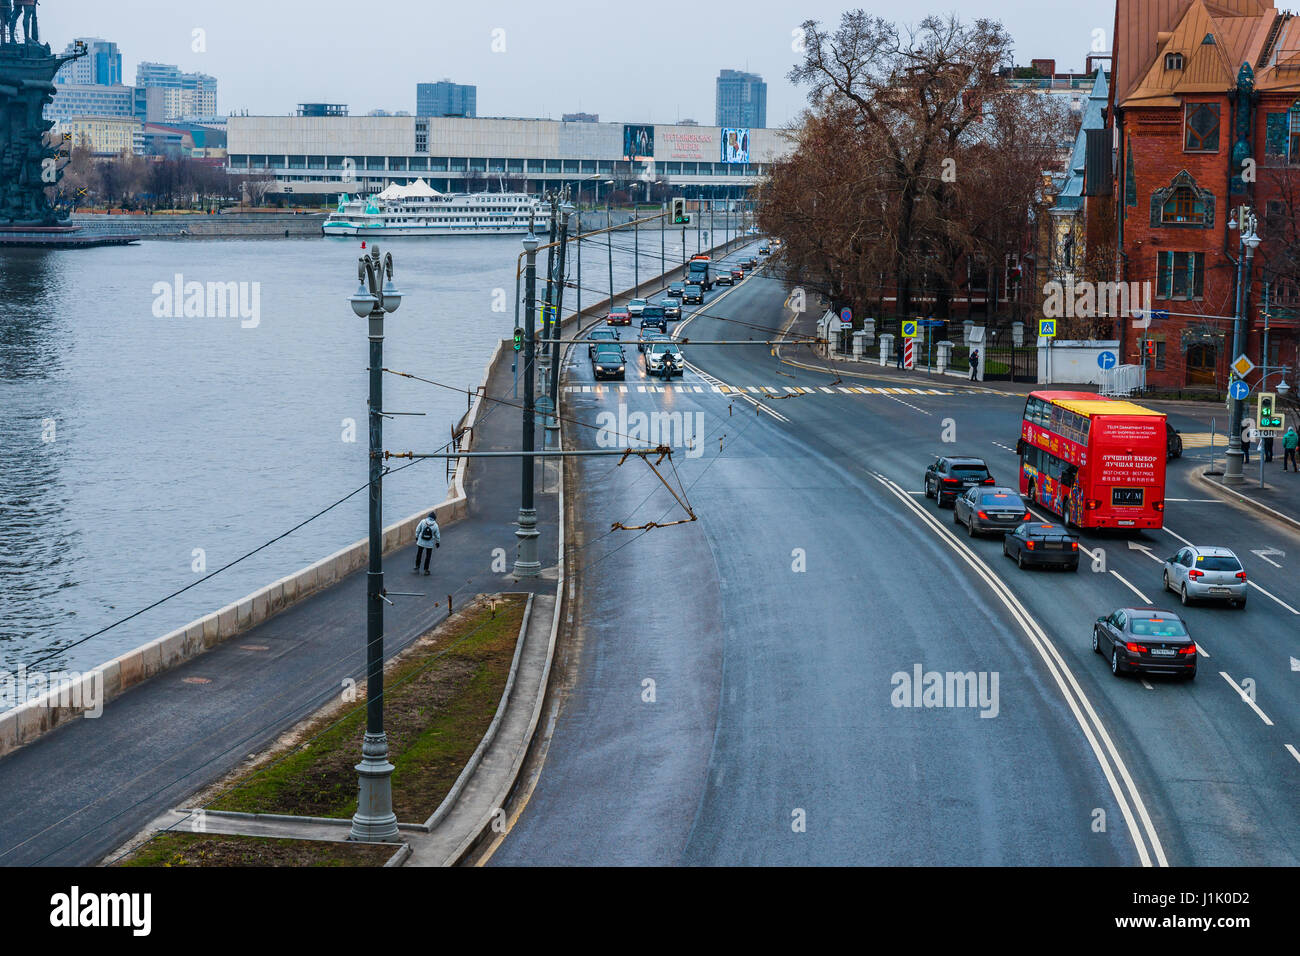 Moskau, 16. April 2017: Prechistenskaya Ufer der Moskwa-Fluss in Richtung Westen. Tretjakow-Galerie (Hintergrund, links). Der whi Stockfoto